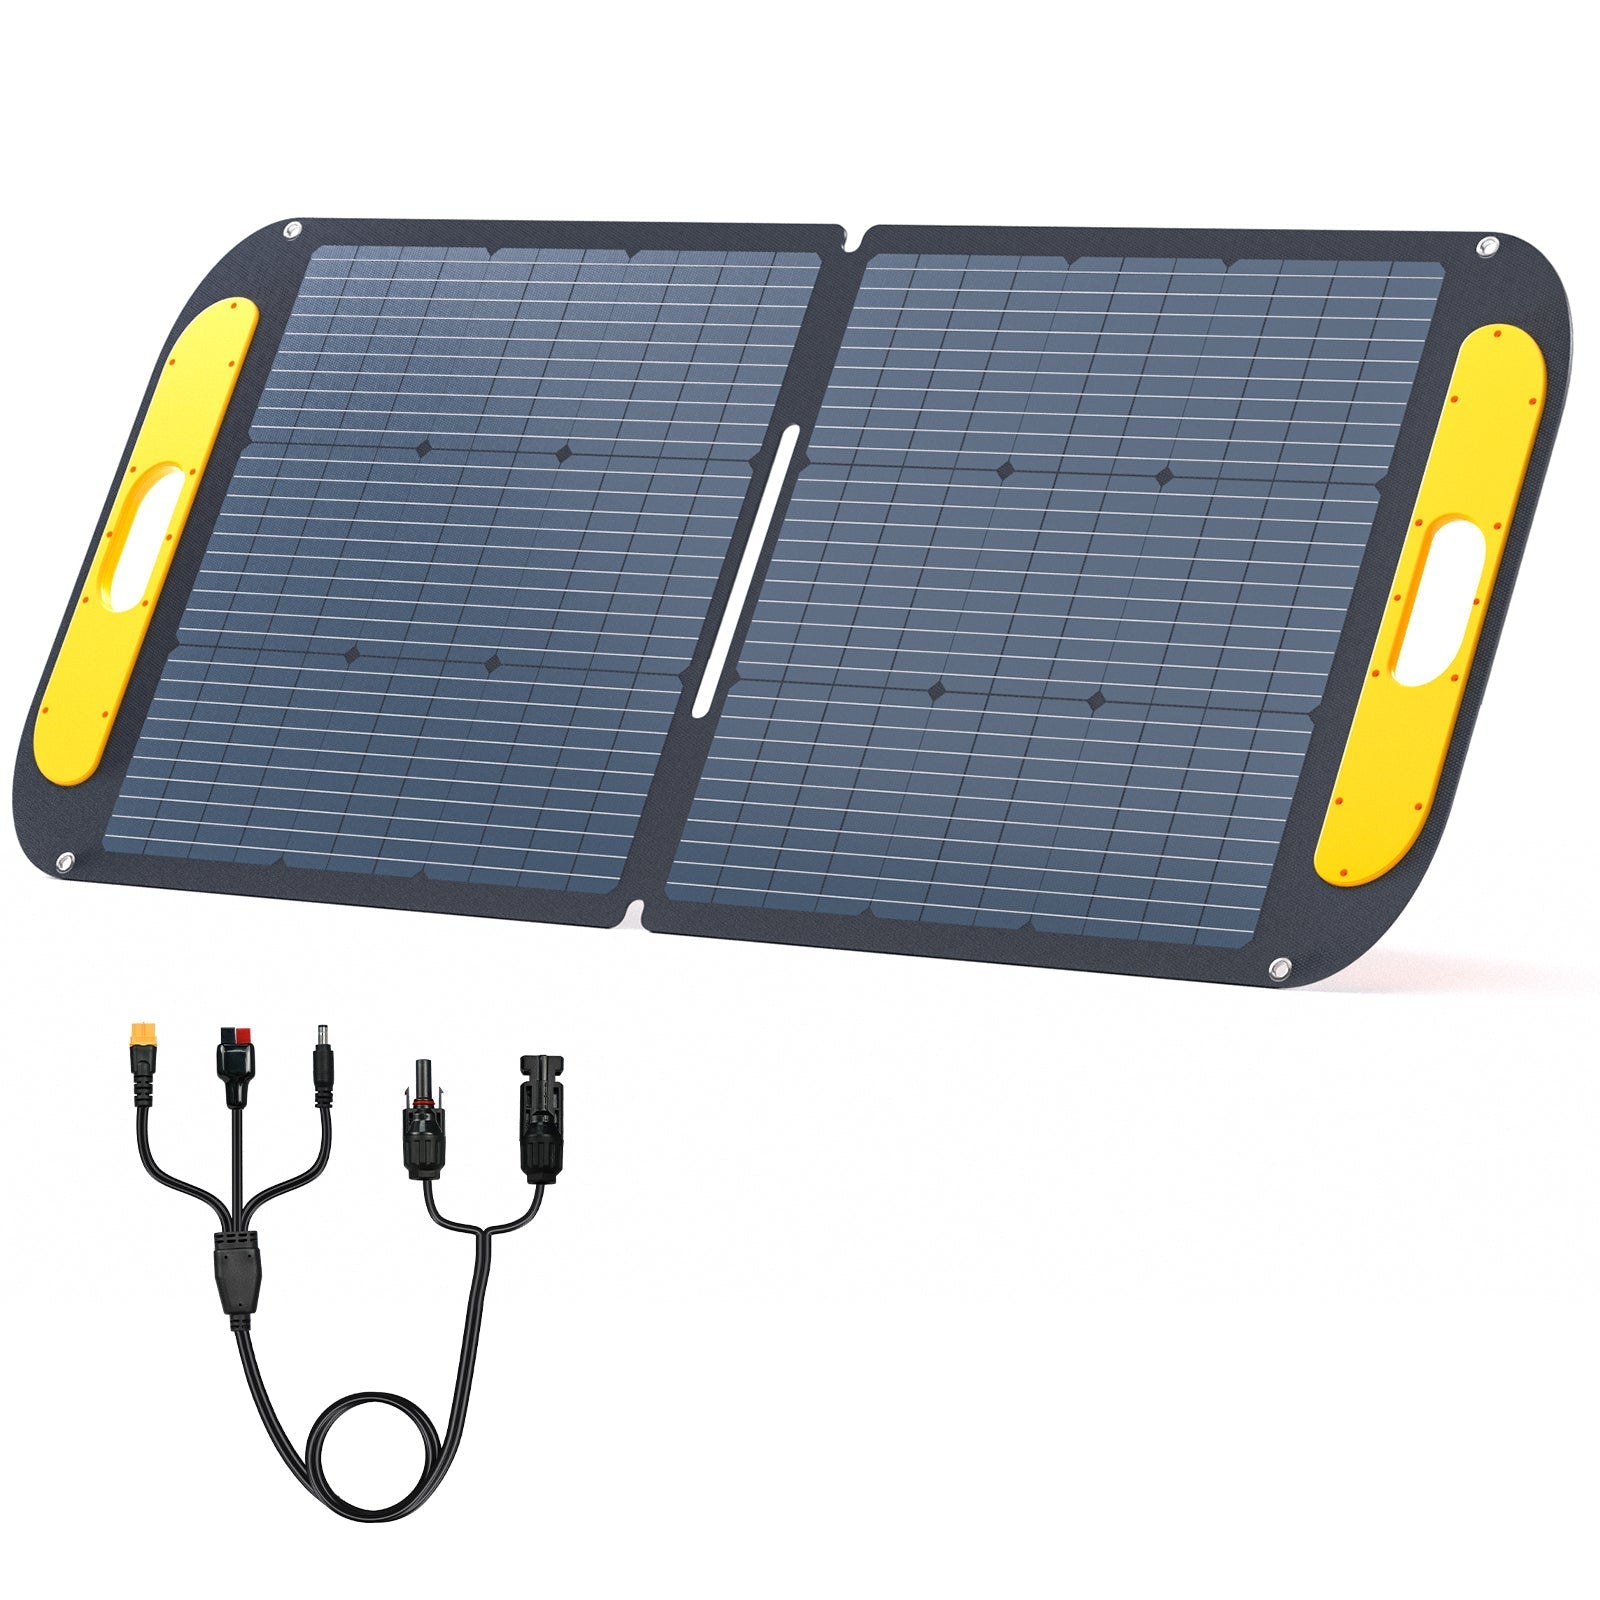 VTOMAN 110W Faltbares tragbares Solarpanel